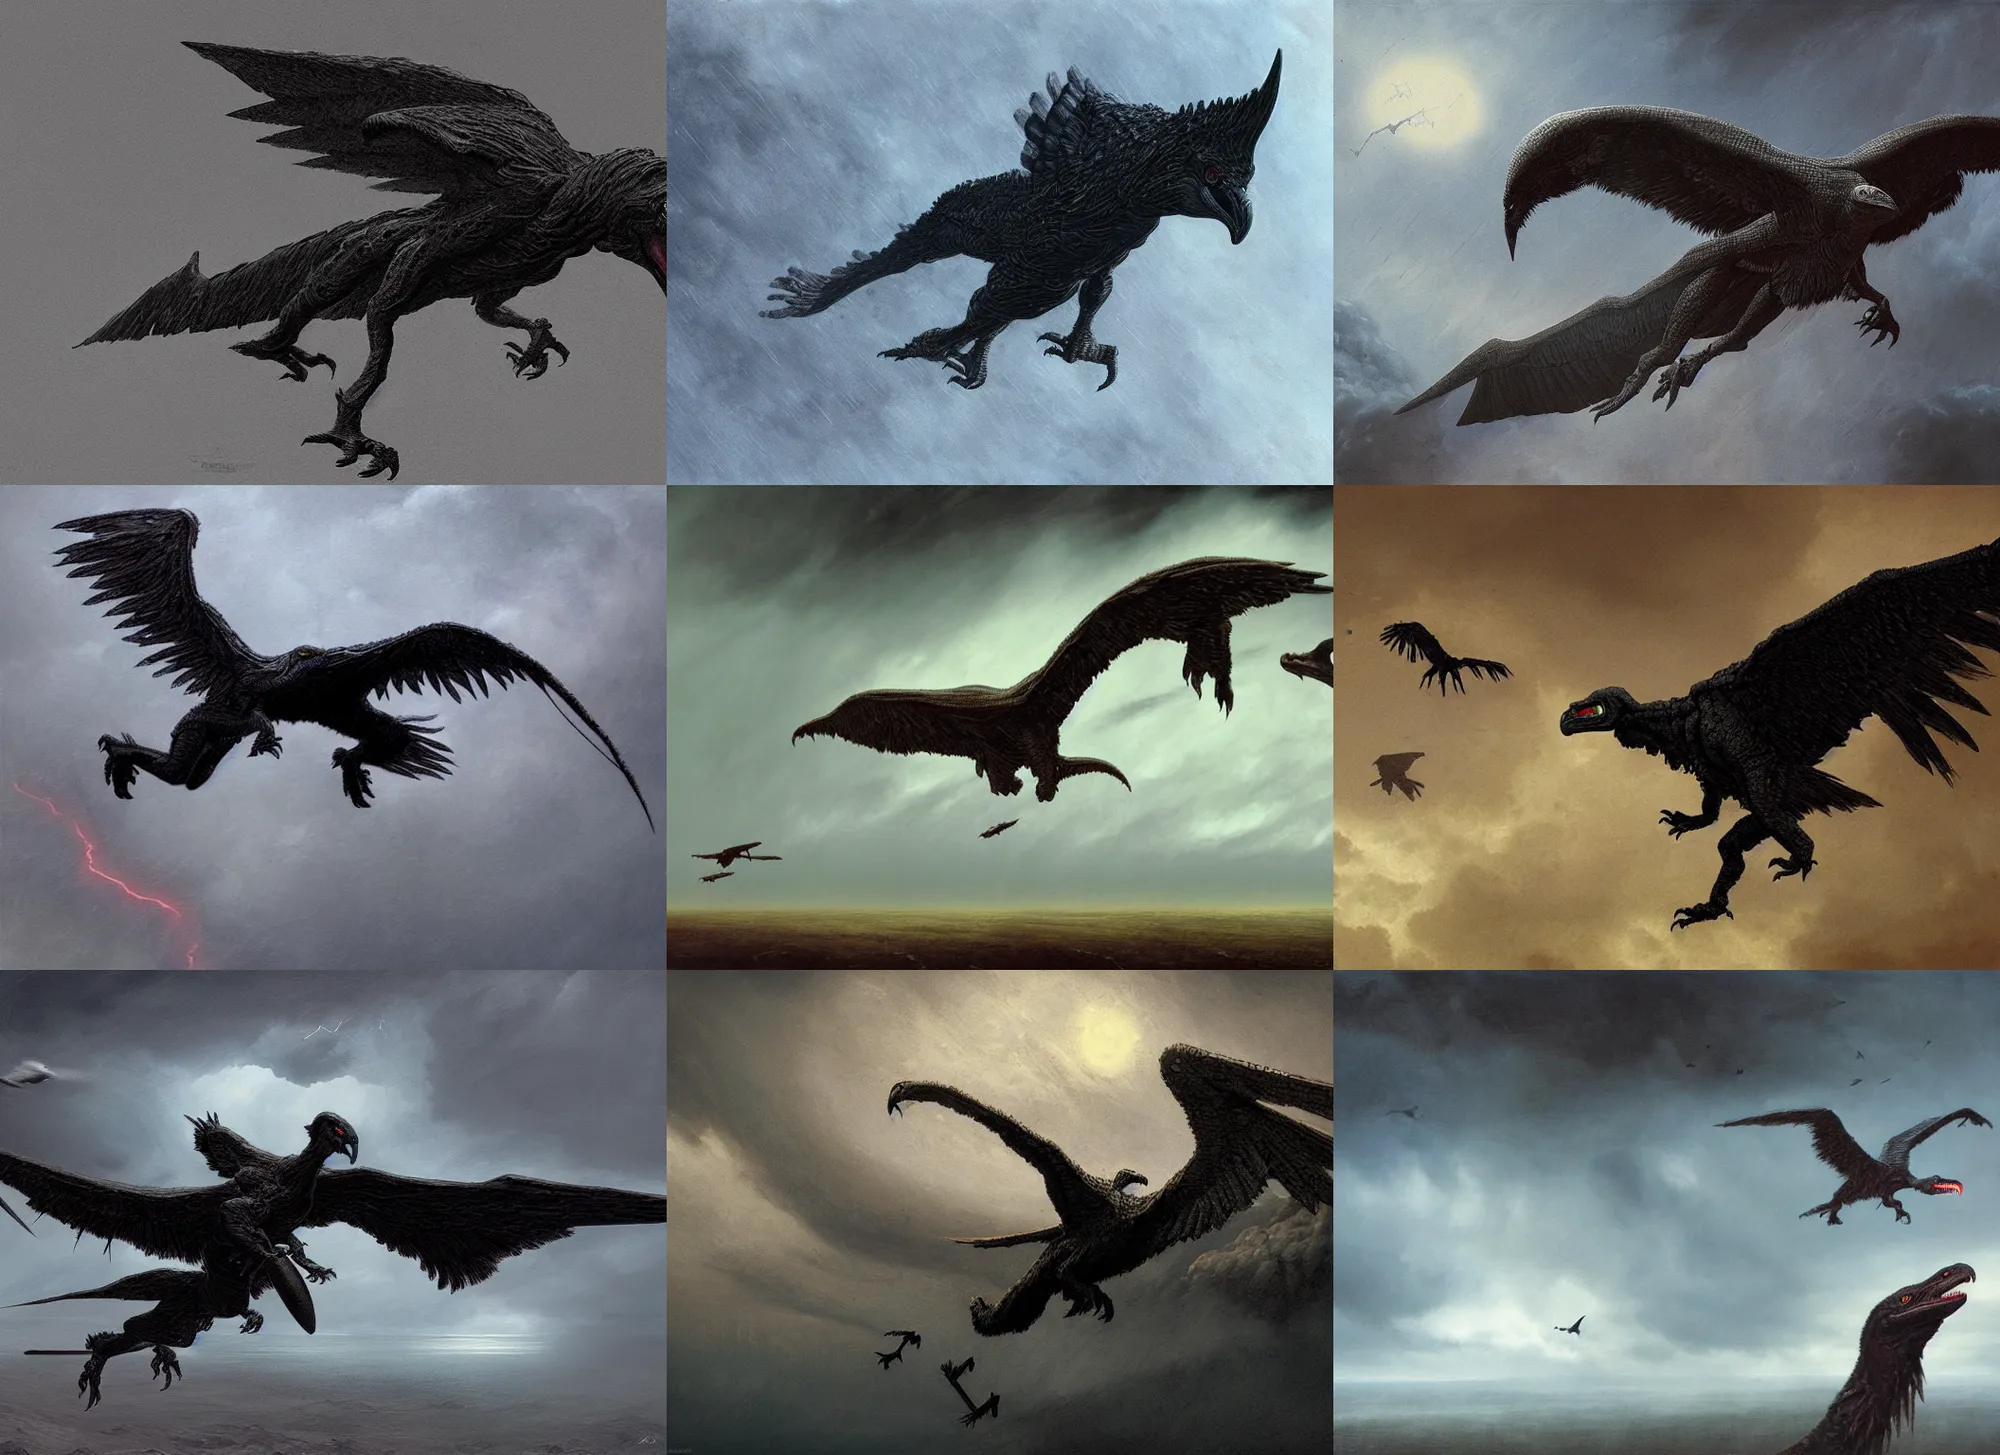 Prompt: giant black velociraptor-vulture flying in storm, intricate, highly detailed, artstation, sharp focus, illustration, rutkowski, beksinski, barlowe